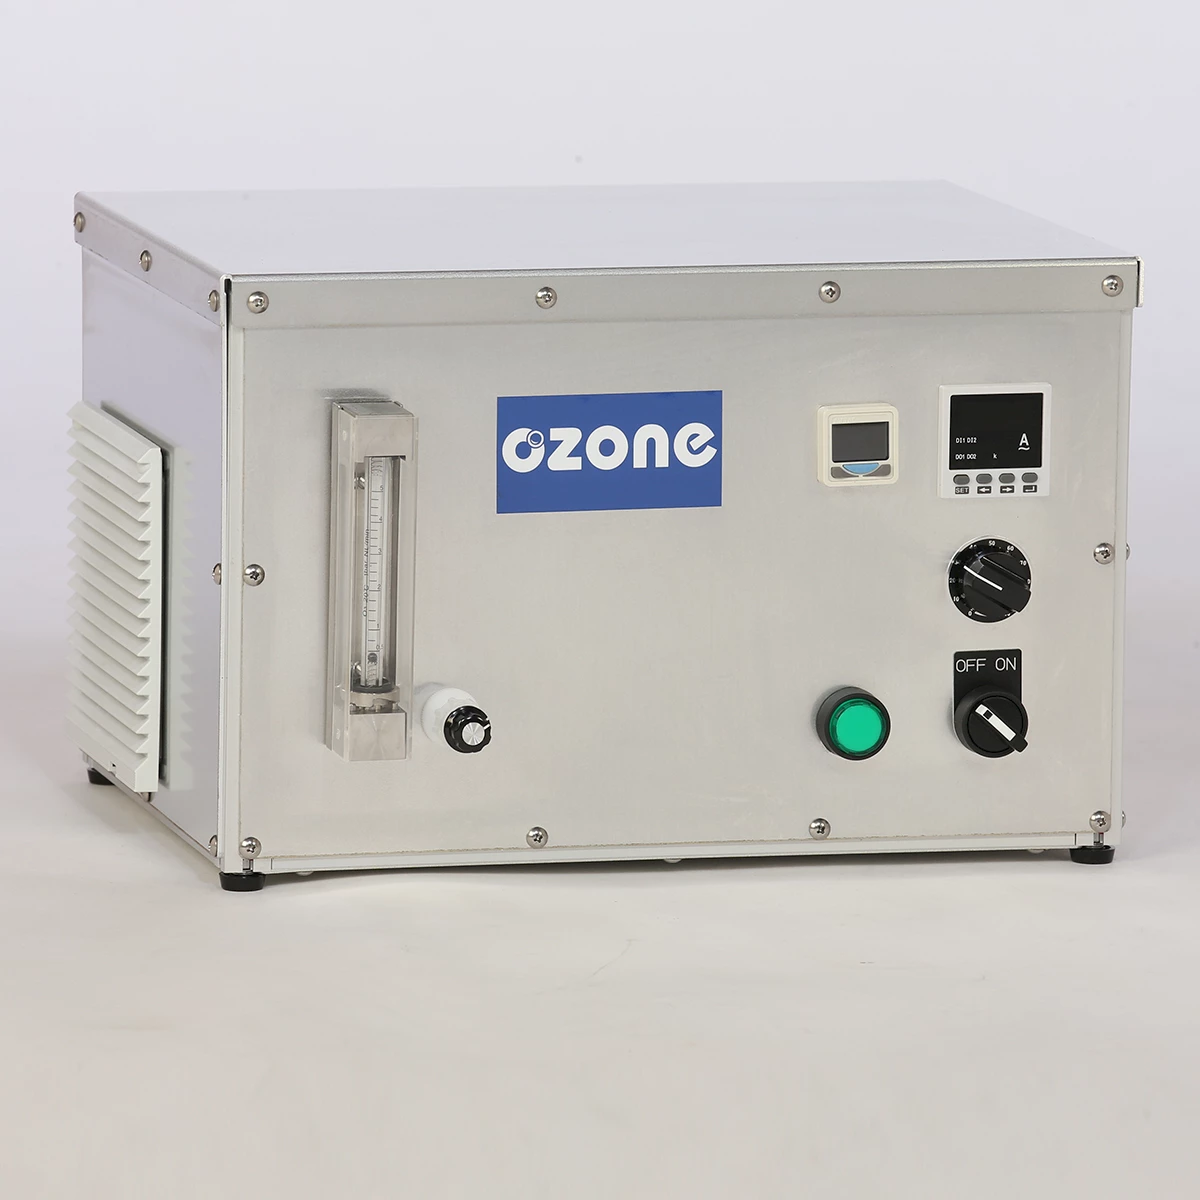 generador de ozono 5Gram de alta calidad, con medidor de flujo amp en presión vista frontal